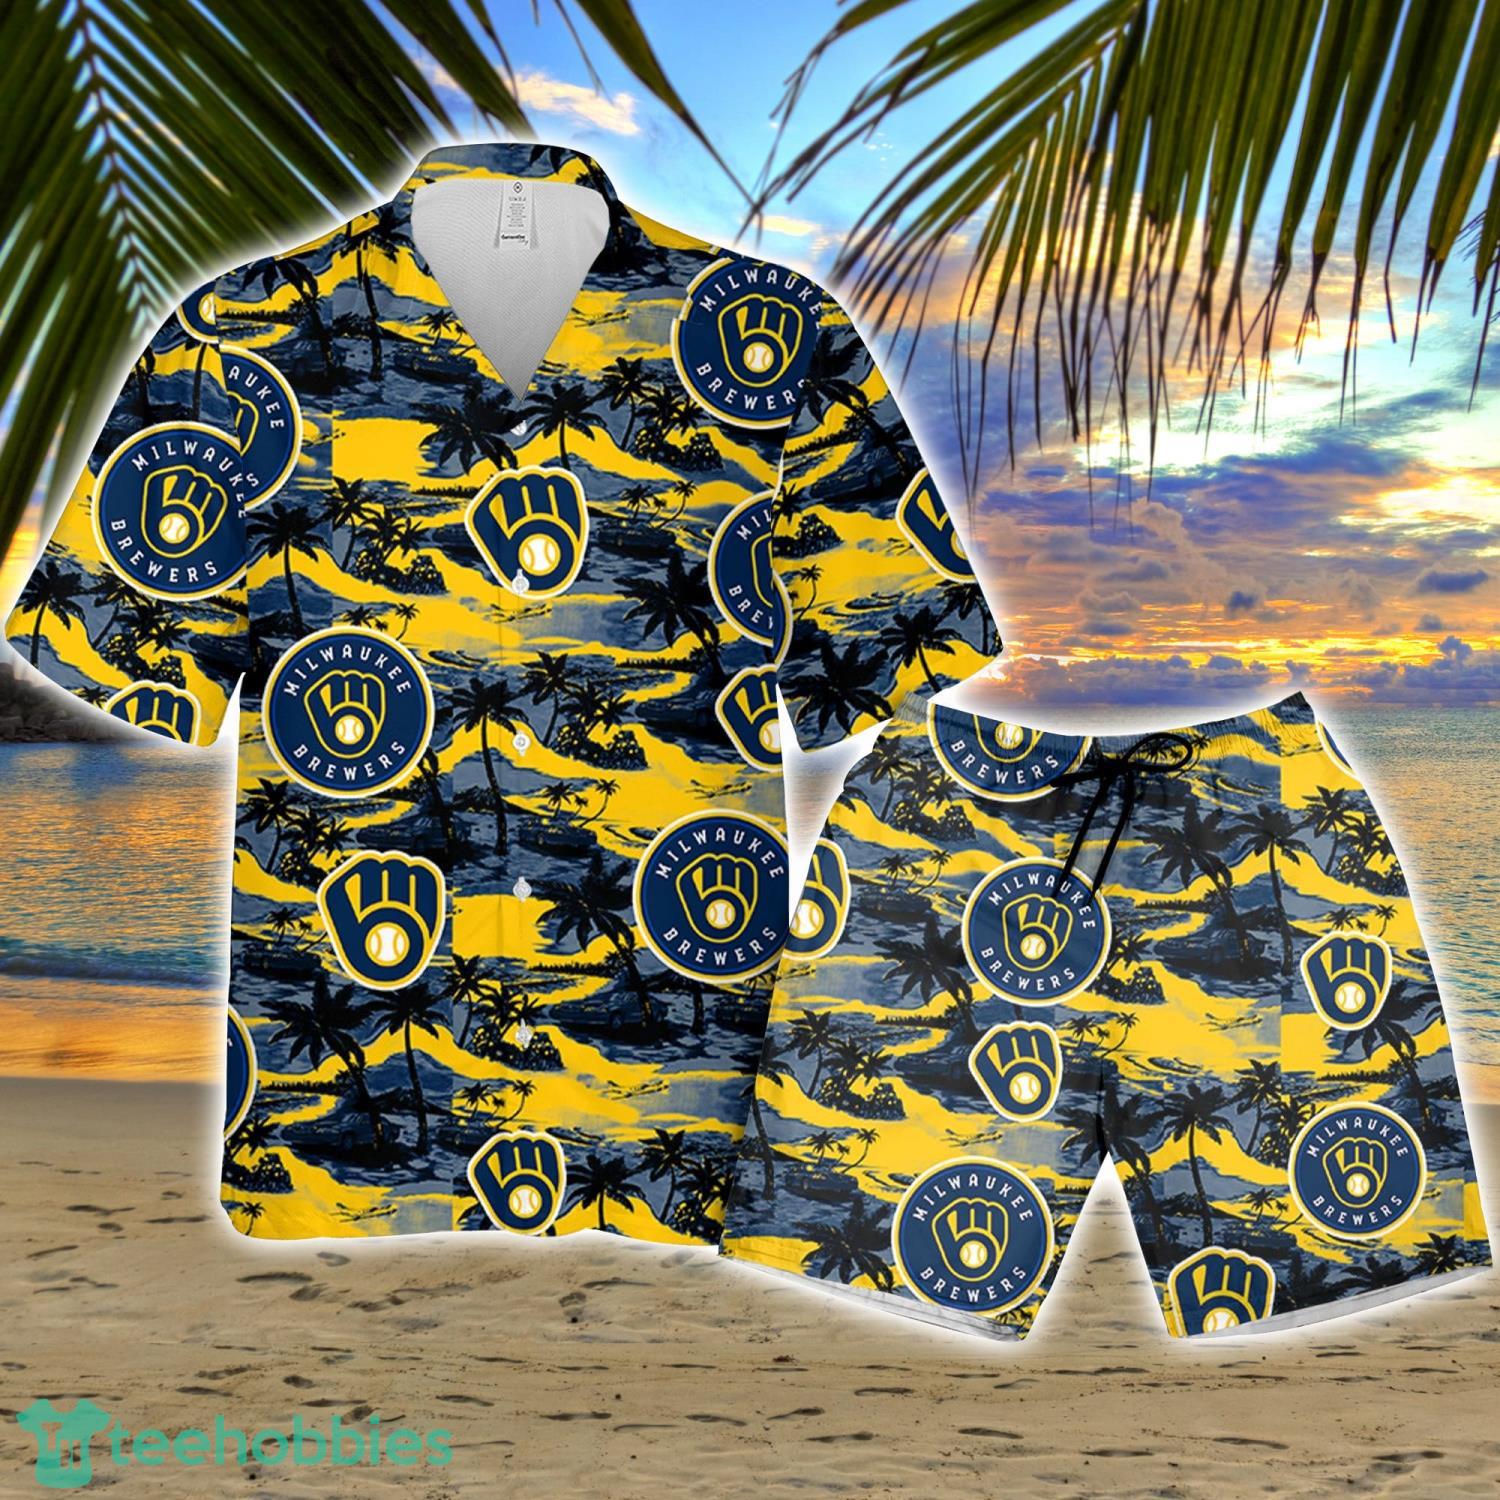 Tampa Bay Rays Vintage Mlb Hawaiian Shirt And Short Gift For Summer